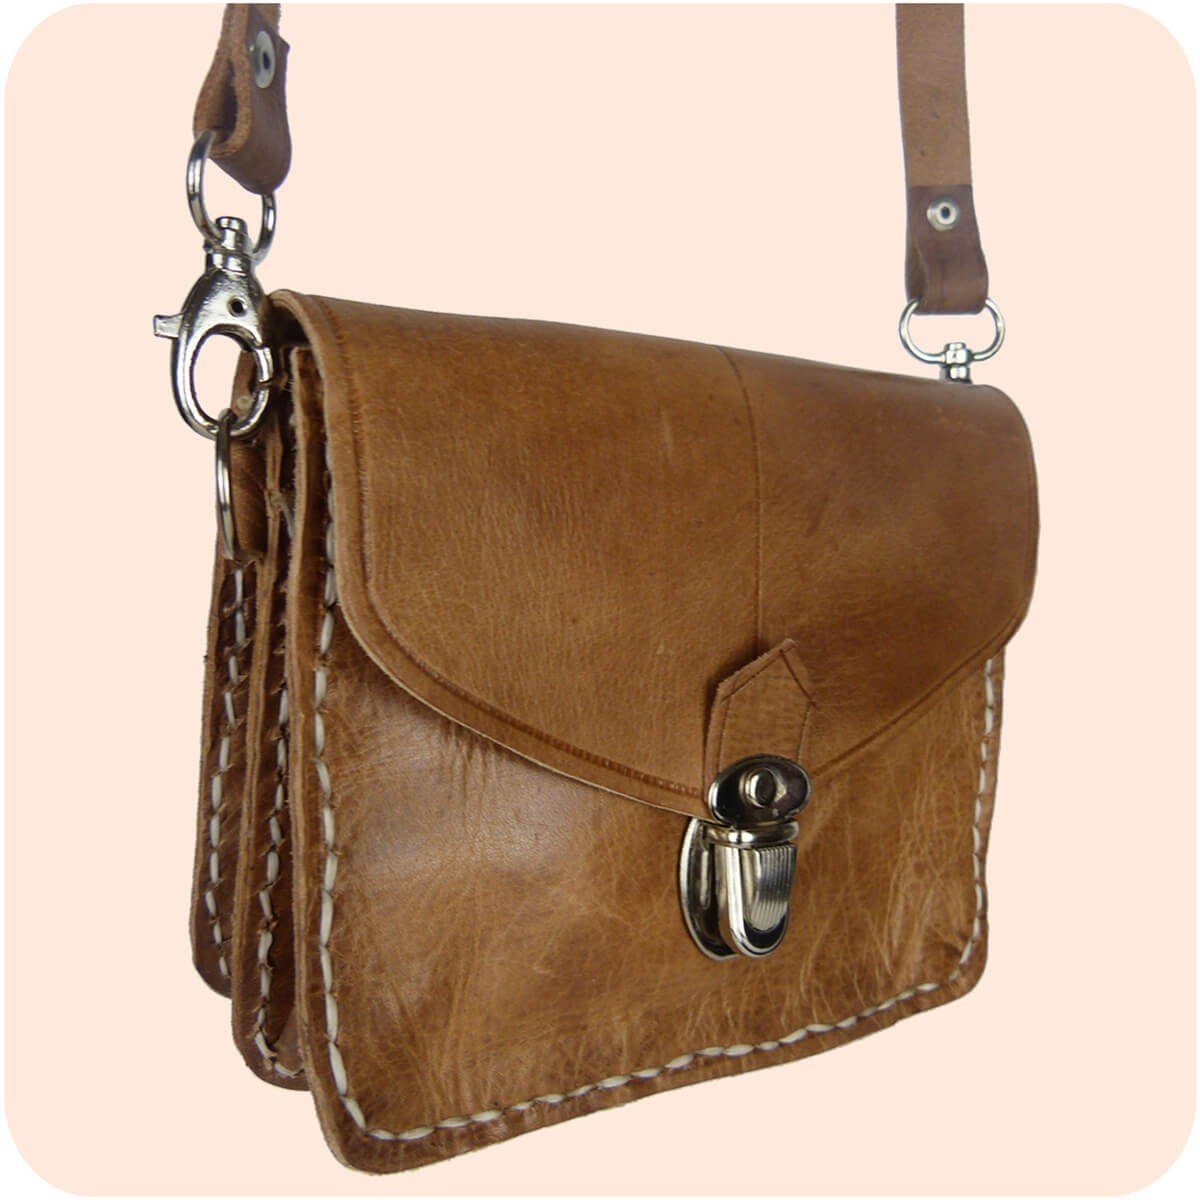 tragbar Leder aus 12x16cm Handtasche SIMANDRA Gürteltasche Hellbraun - & Handtasche als Tanger Schultertasche Echtleder